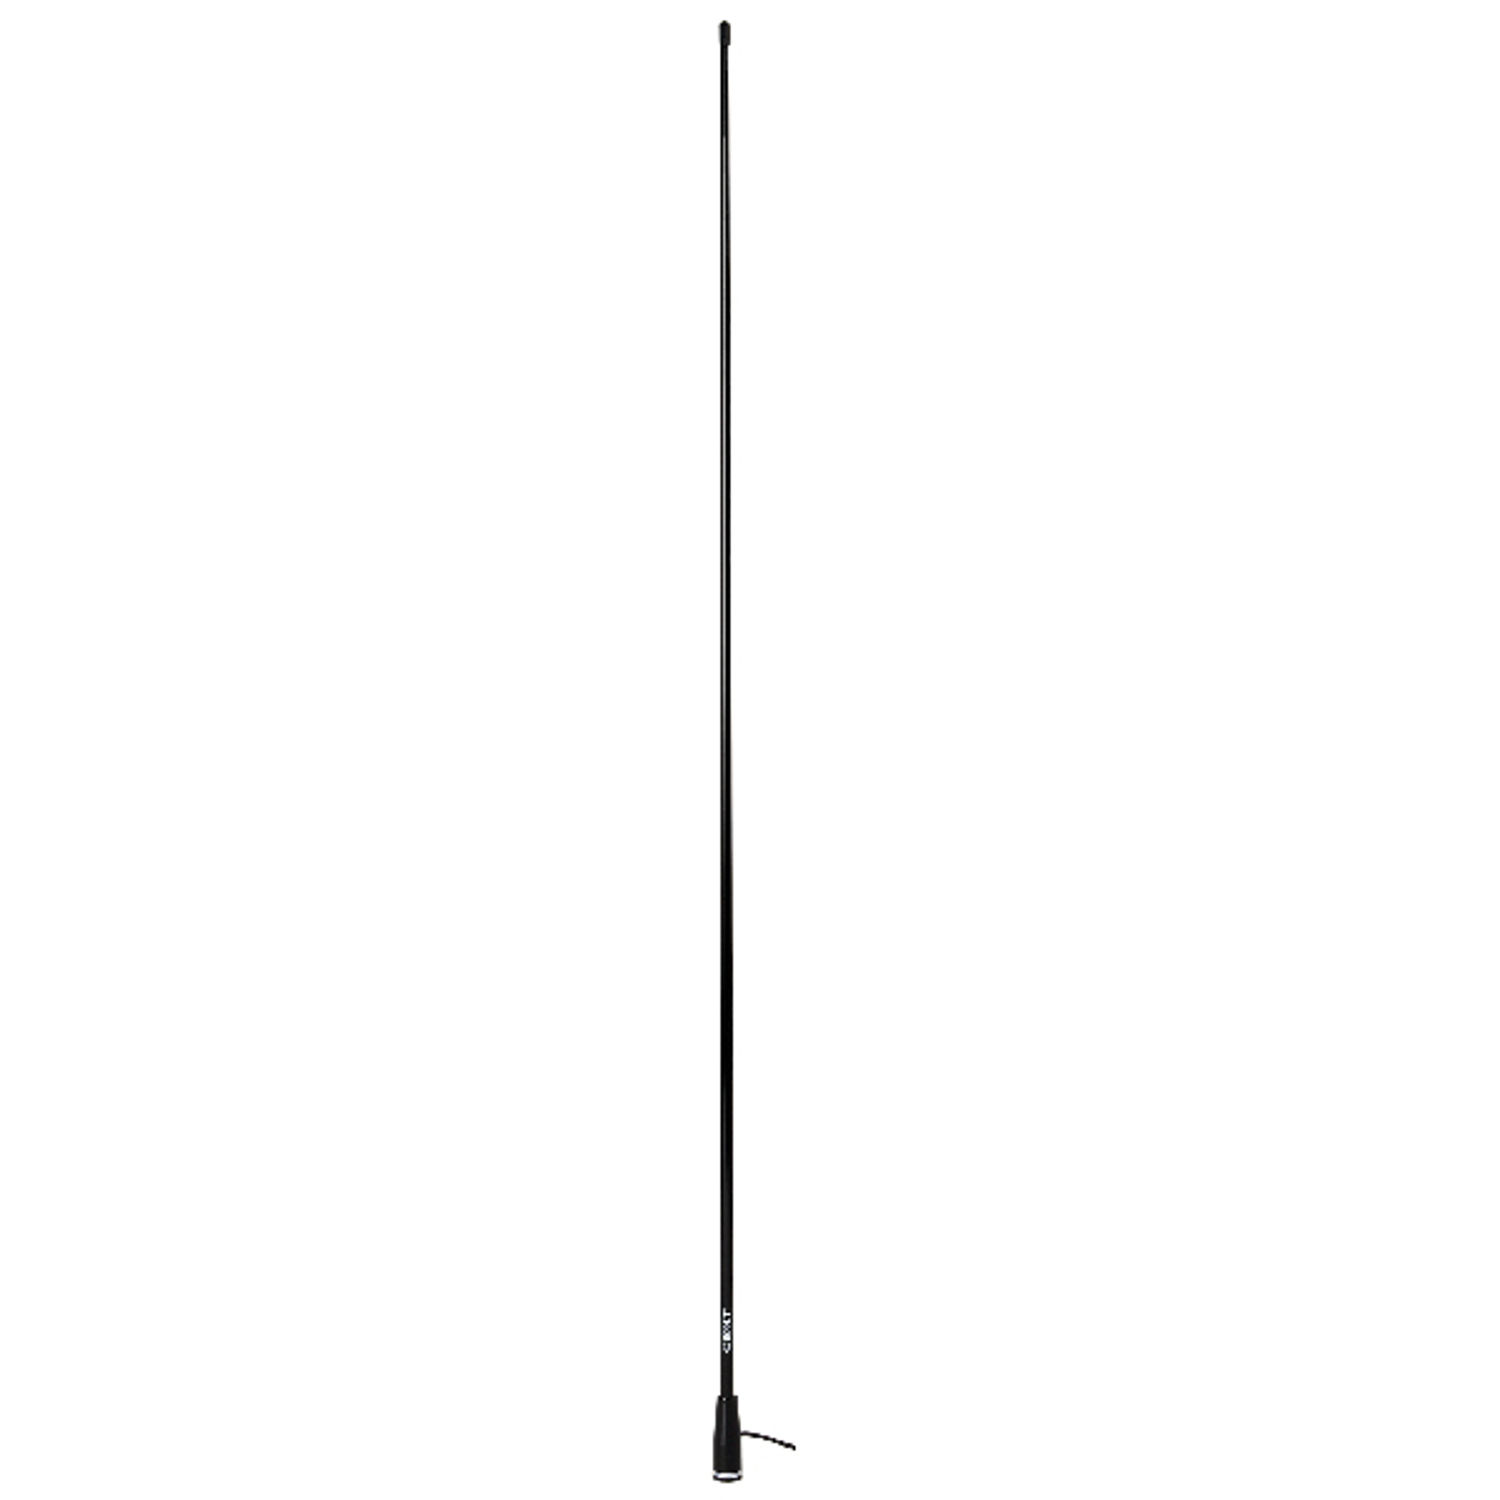 Scout KS-22 VHF antenn svart, 1,5m med 5m kabel och kontakt